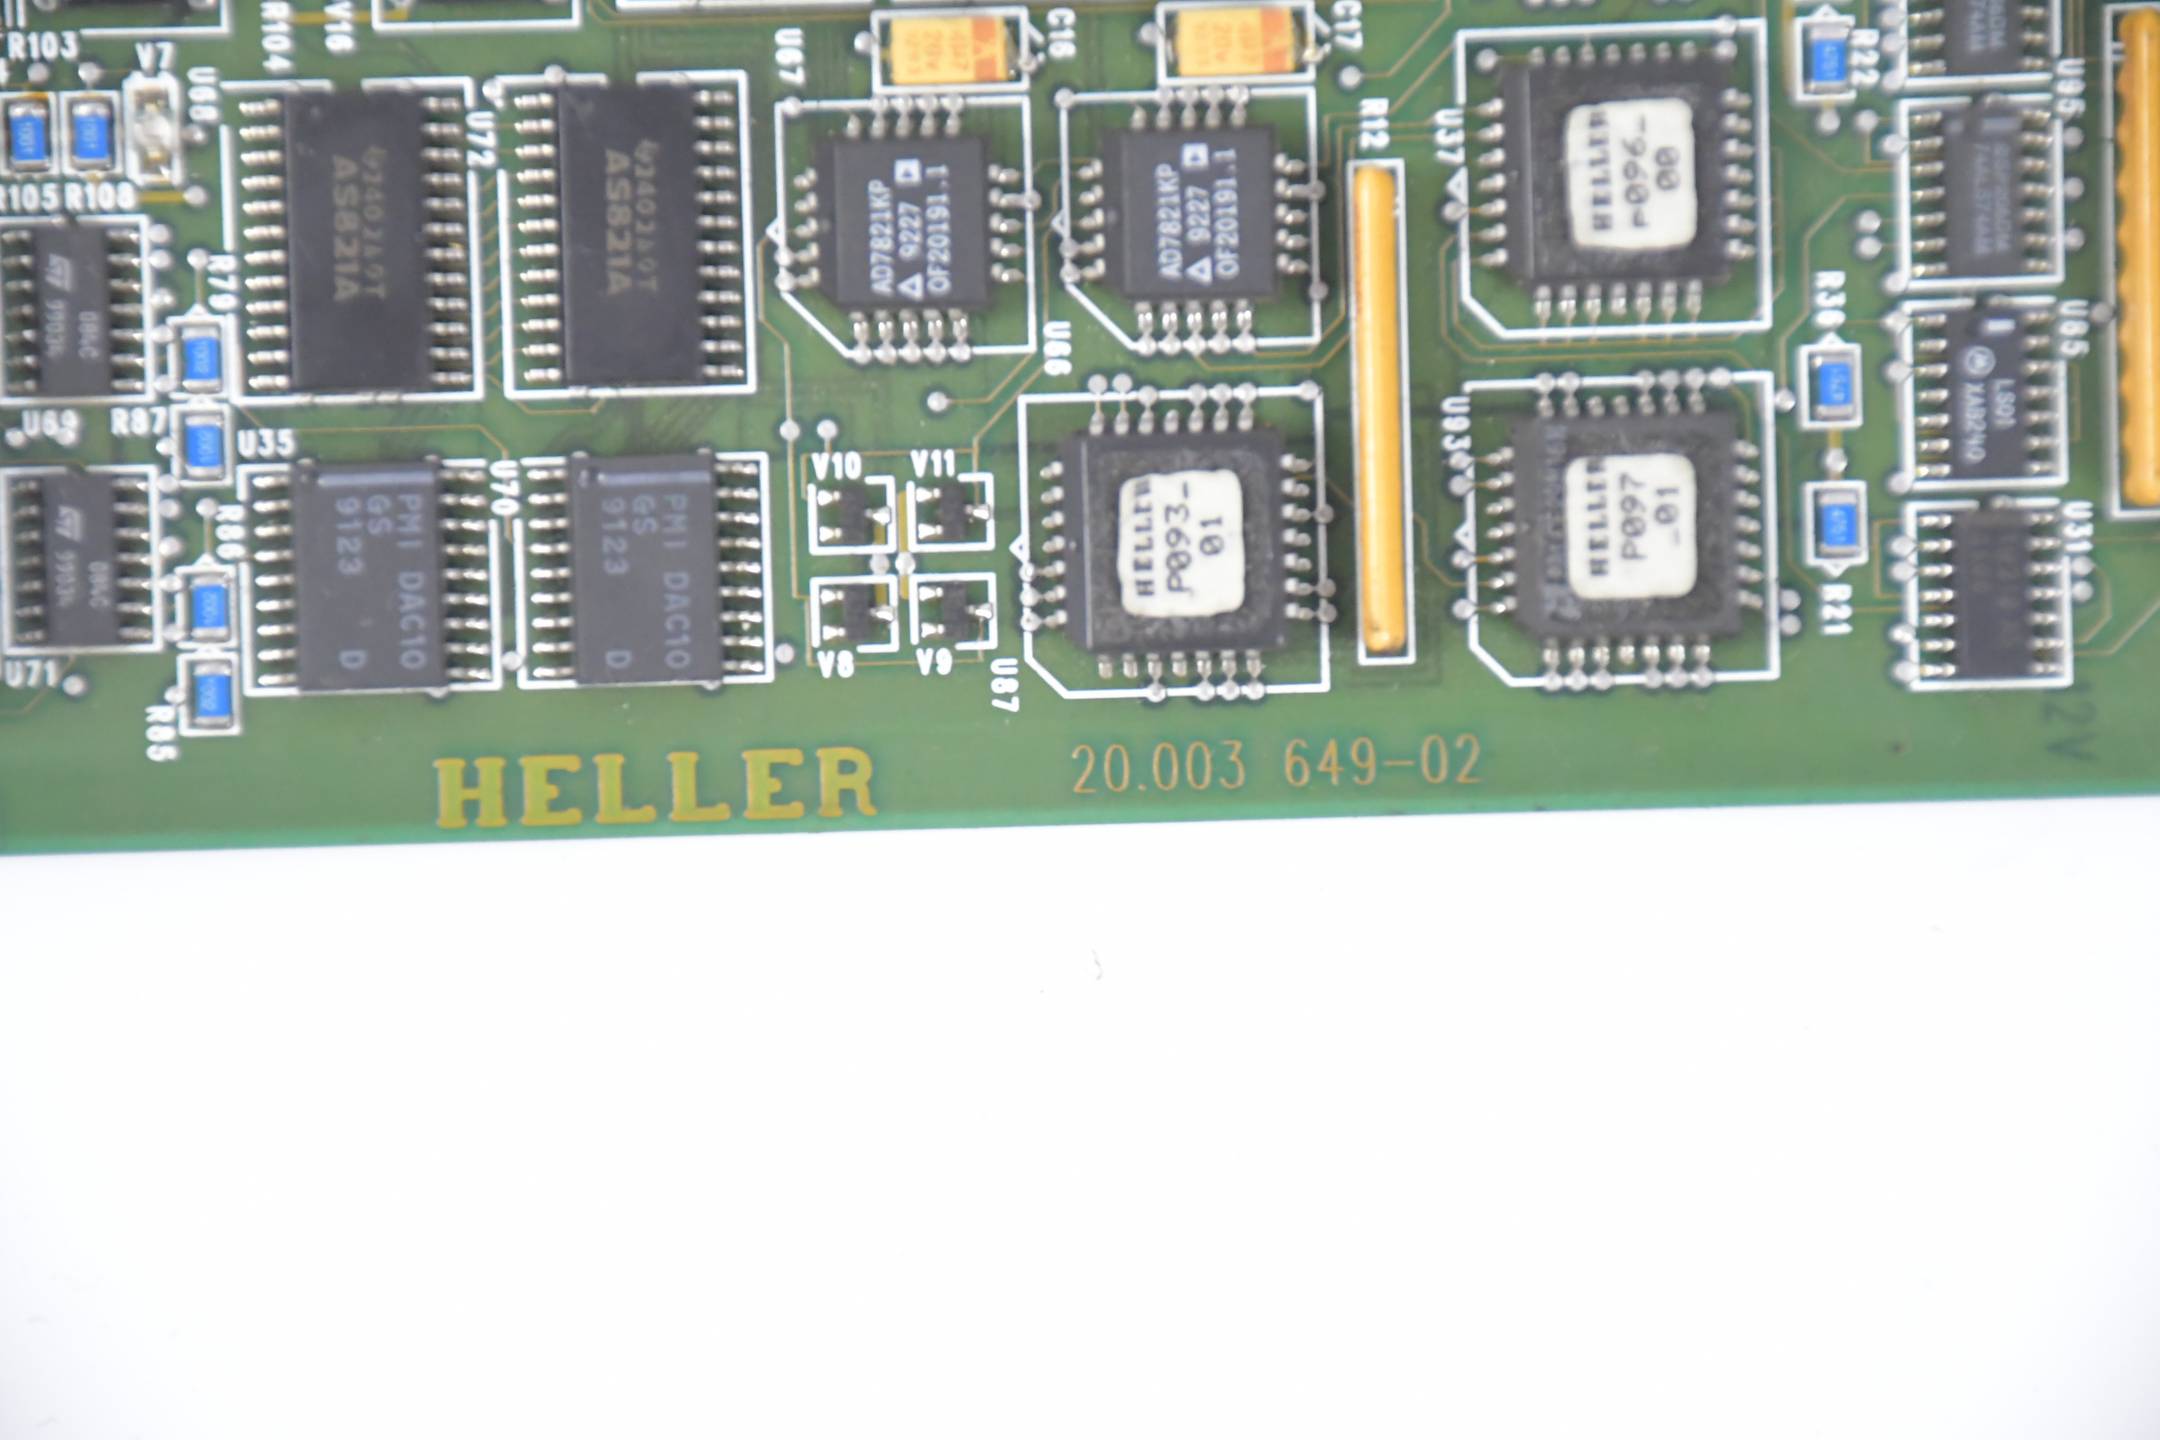 Heller uni-Pro ACPU90-VU 20.003 649-02 ( 20.003649-02 )